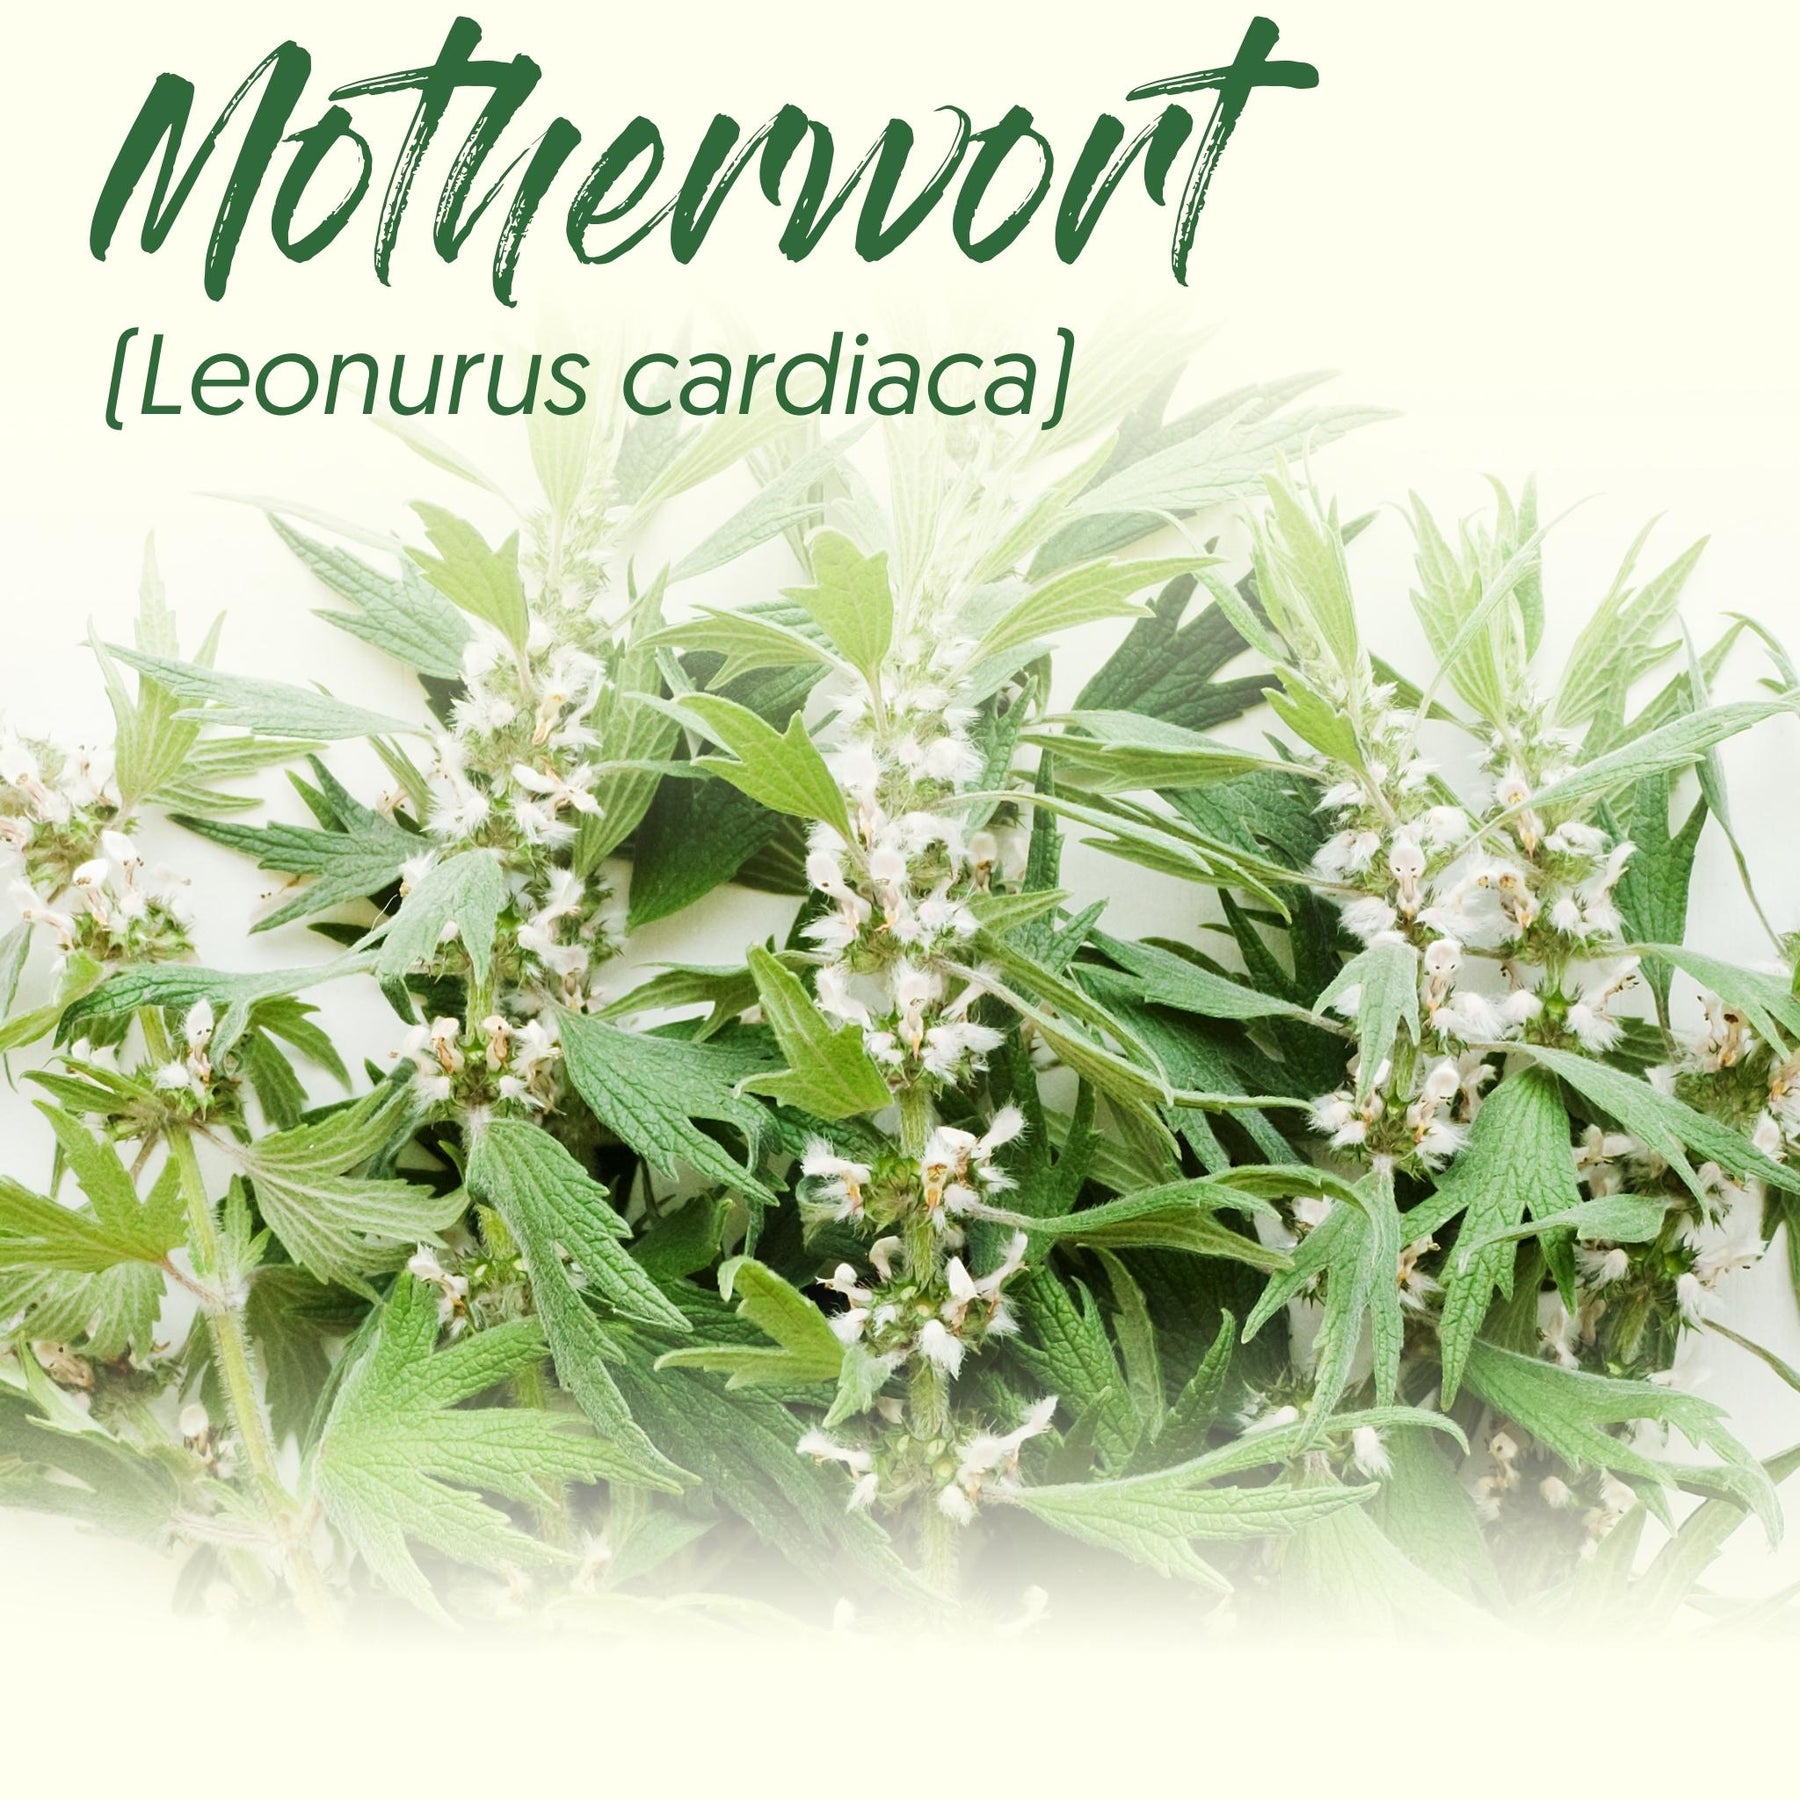 Medicinal Herb Spotlight: Motherwort